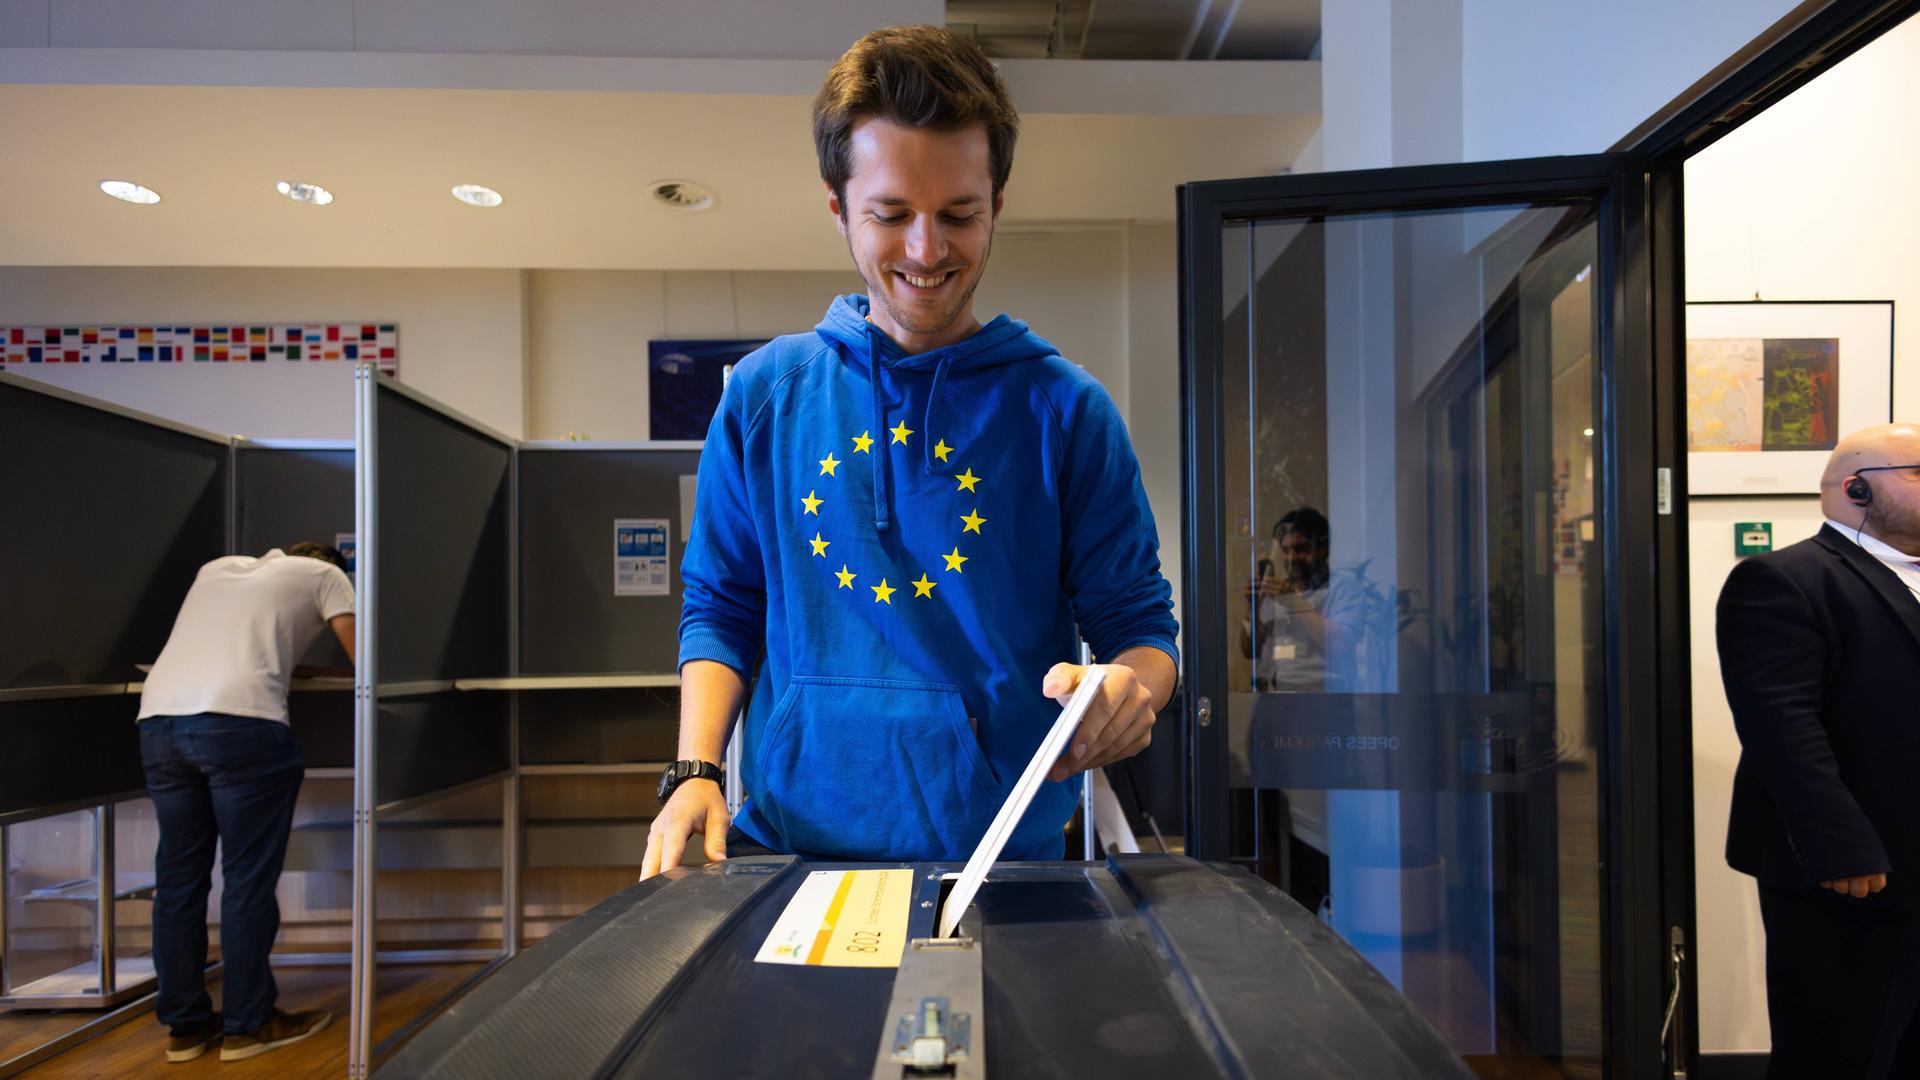 Den Haag, Niederlande: Ein Mann in blauem Pulli mit den gelben Sternen der EU steckt seinen Wahlzettel in die Wahlurne. Im Hintergrund steht ein anderer Mann in einer Wahlkabine.